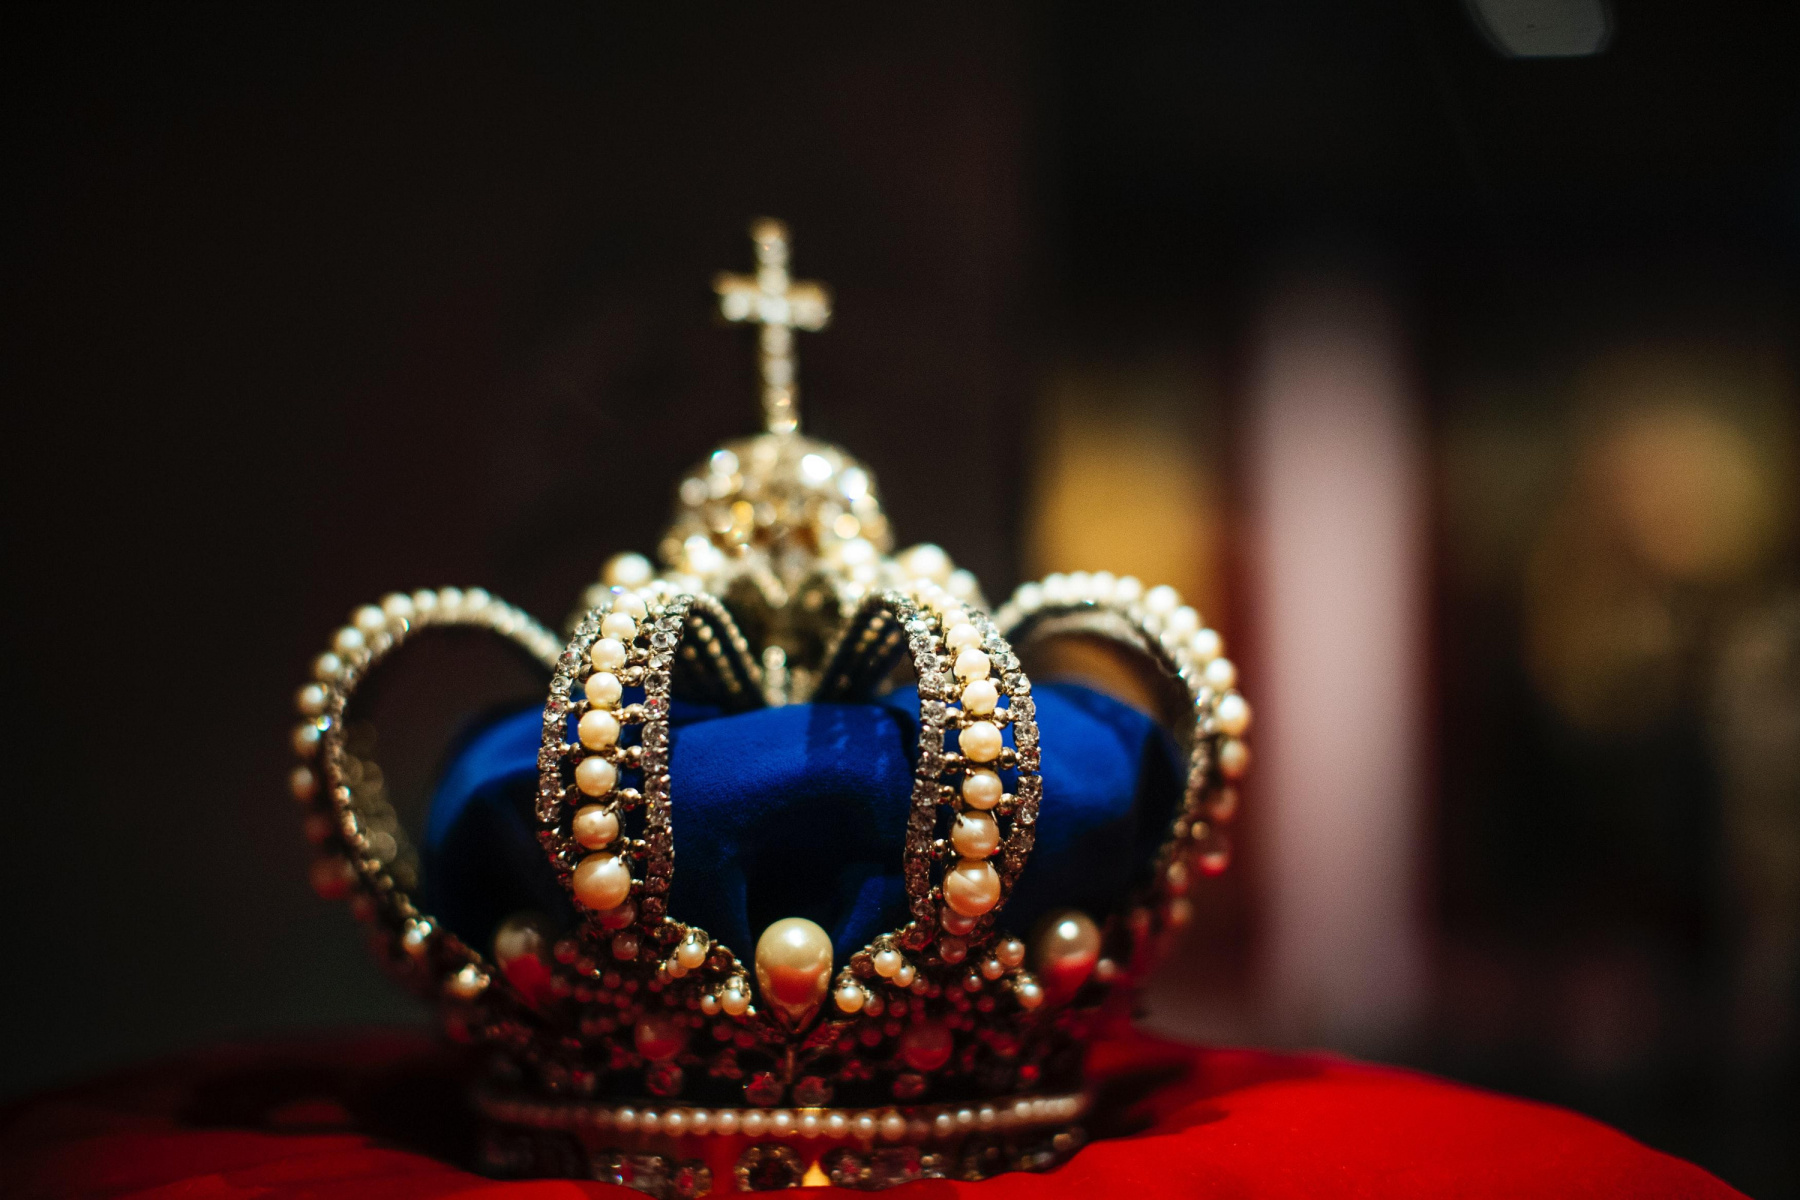 Les 5 secrets de la couronne de la reine d'Angleterre - Michaël